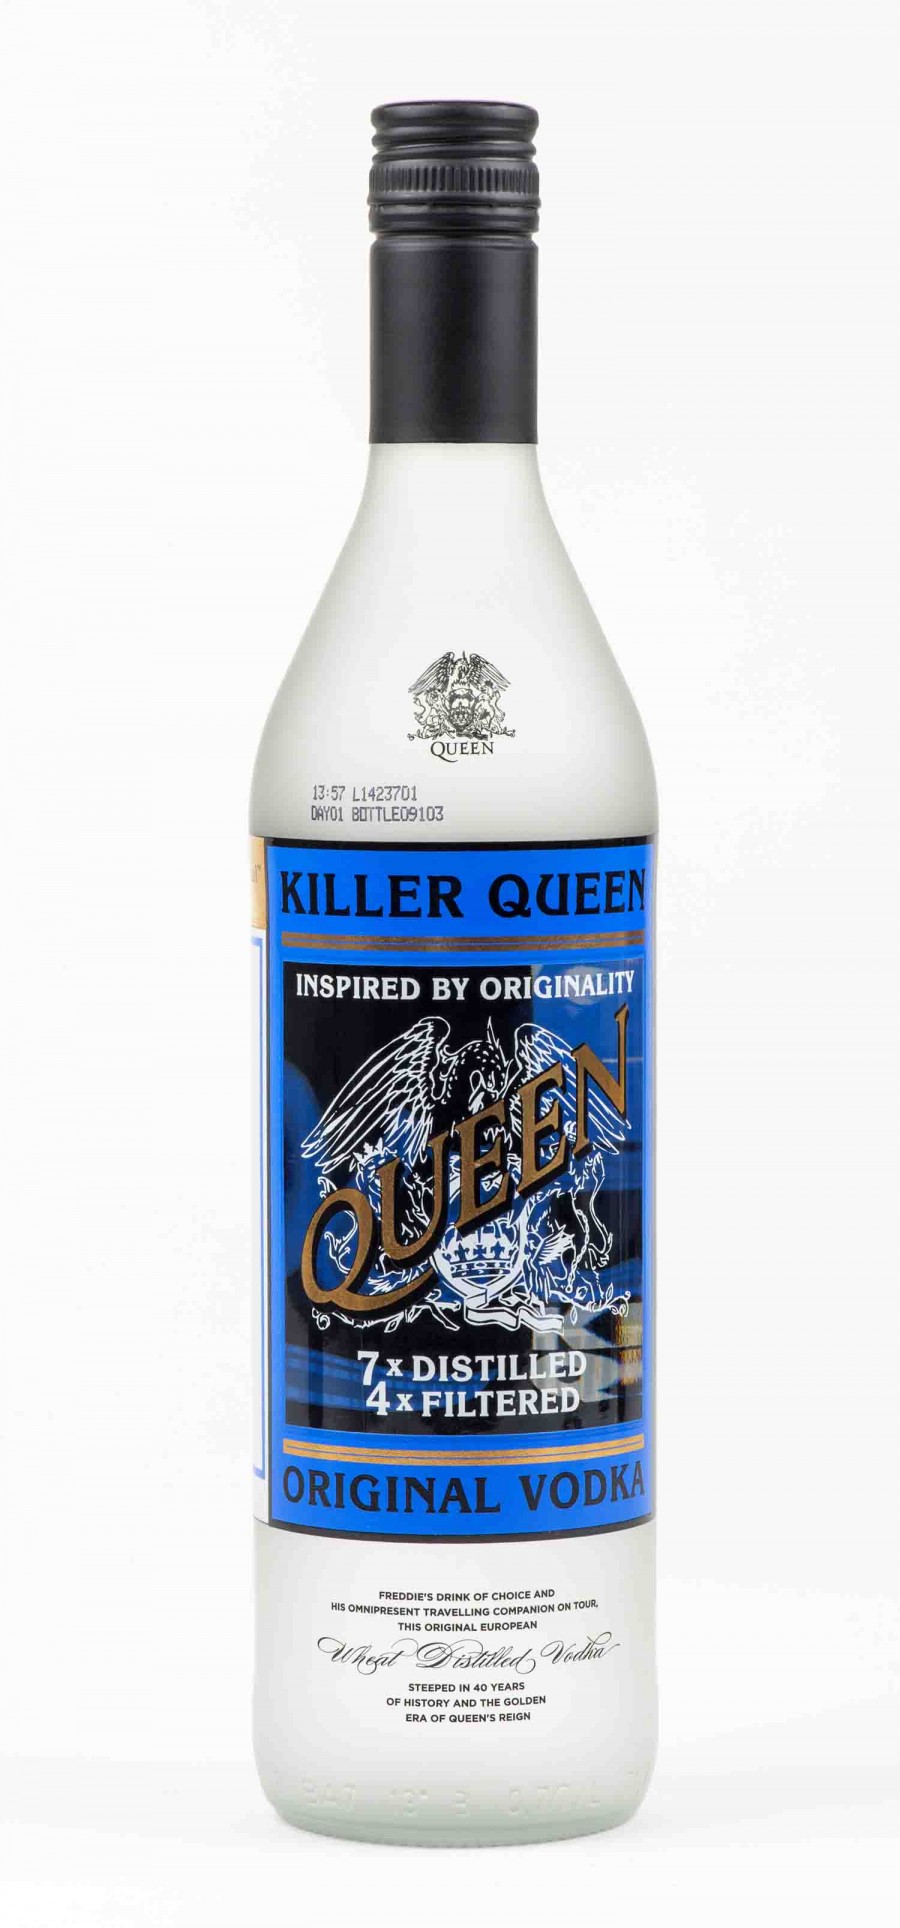 Killer Queen vodka